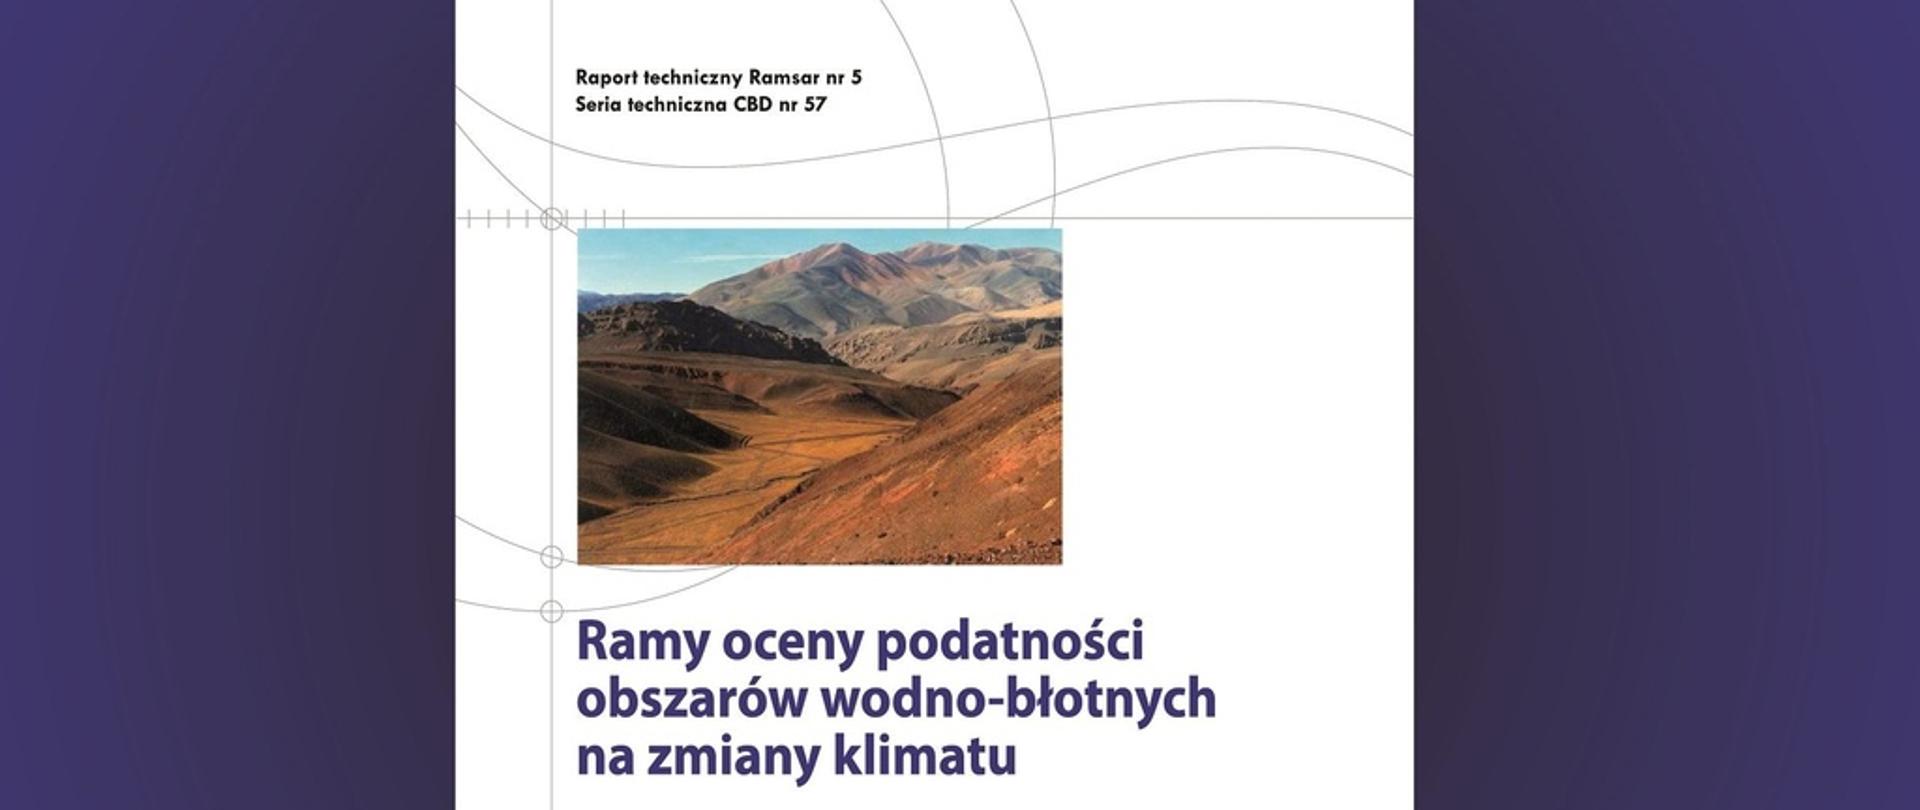 Okładka Raportu technicznego Ramsar nr 5 przedstawiająca górzysty pustynny teren, tytuł opracowania oraz jego autorów.